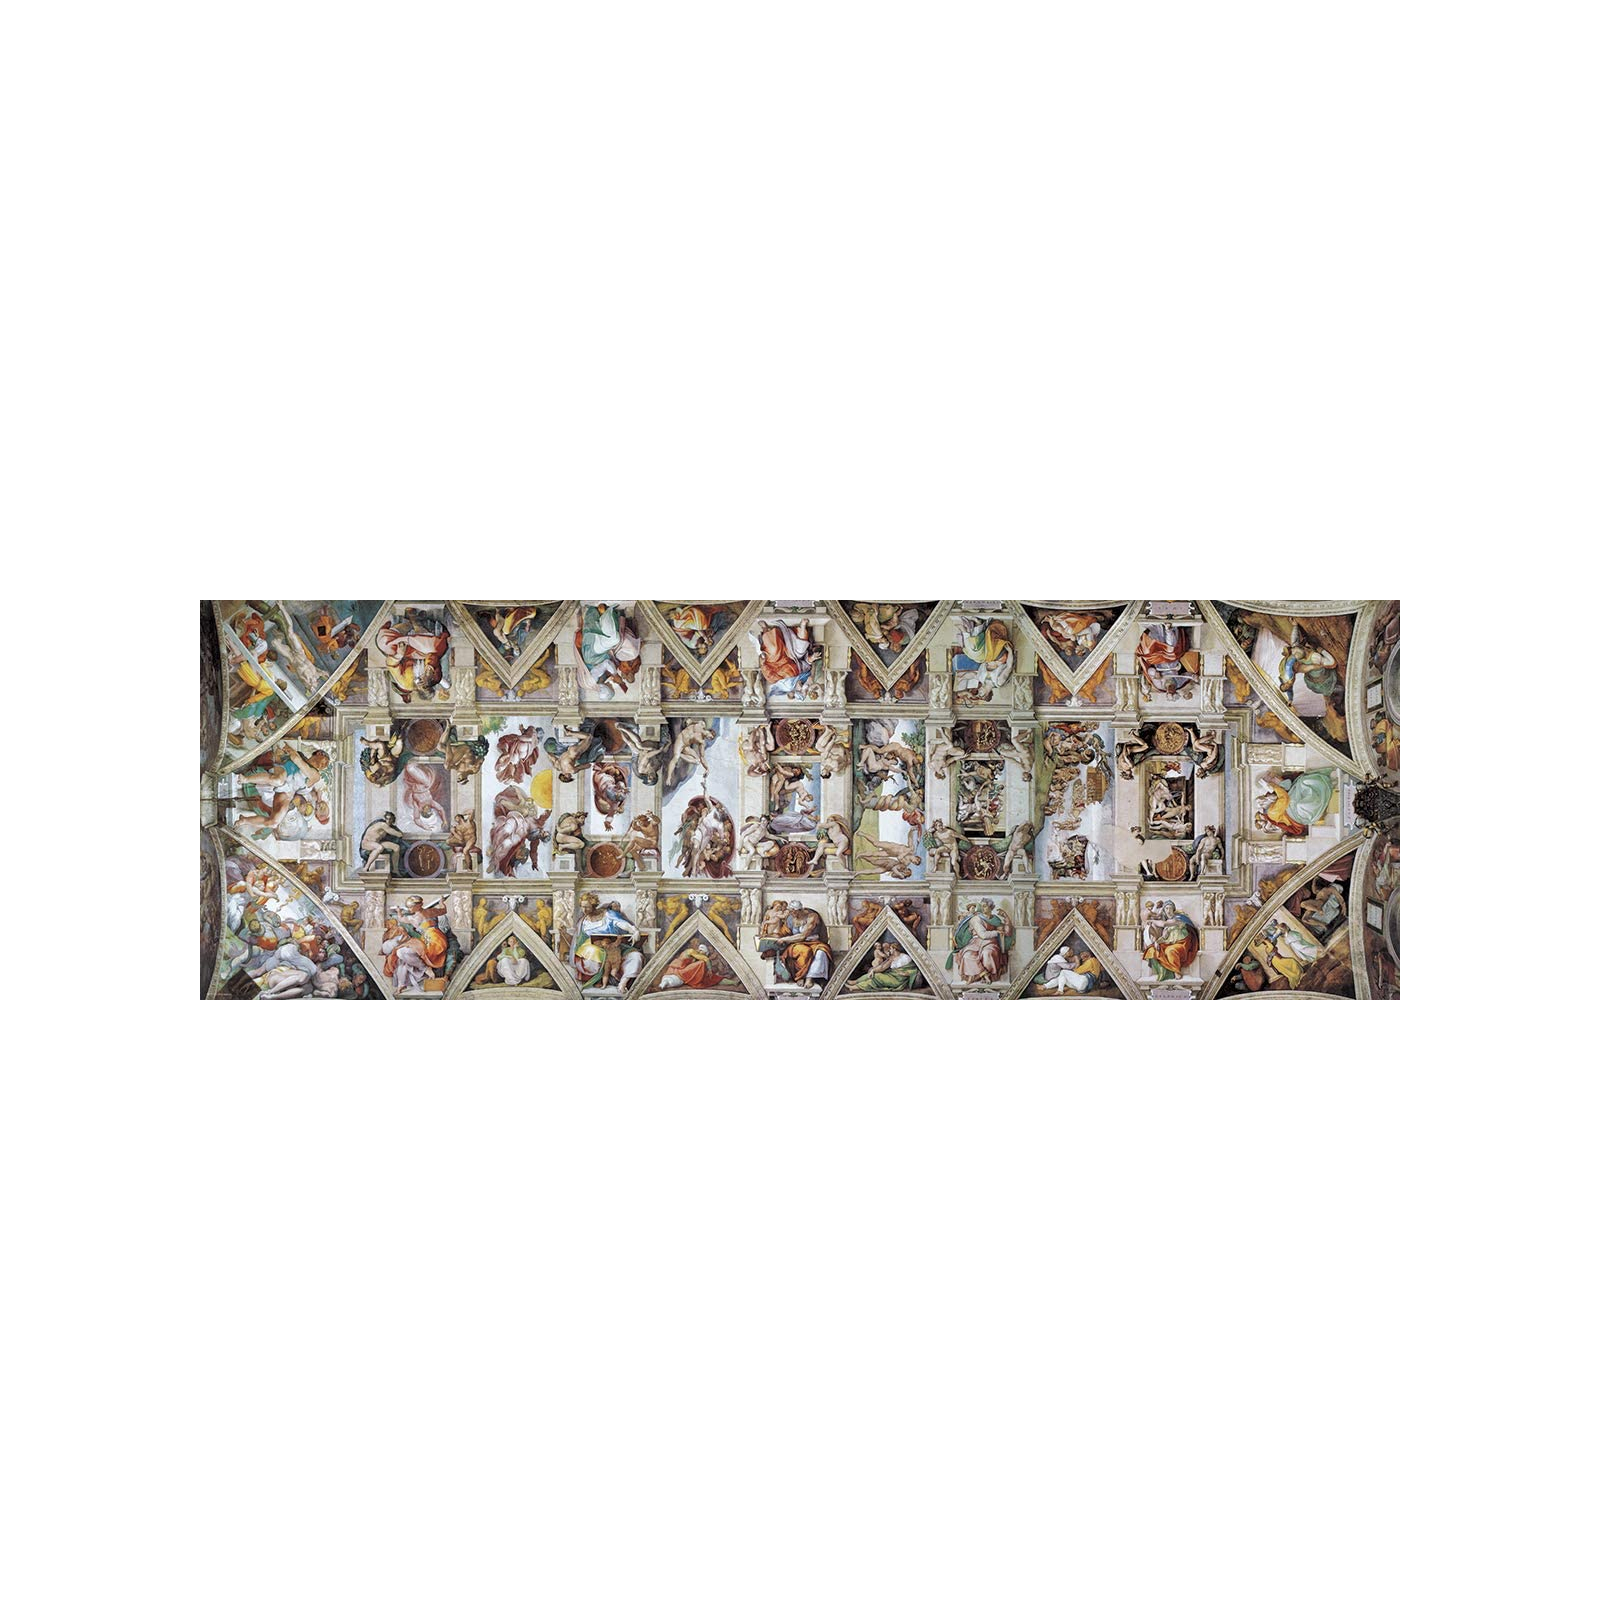 Пазл Eurographics Сикстинская капелла. Микеланджело, 1000 элементов панорамный (6010-0960) изображение 2